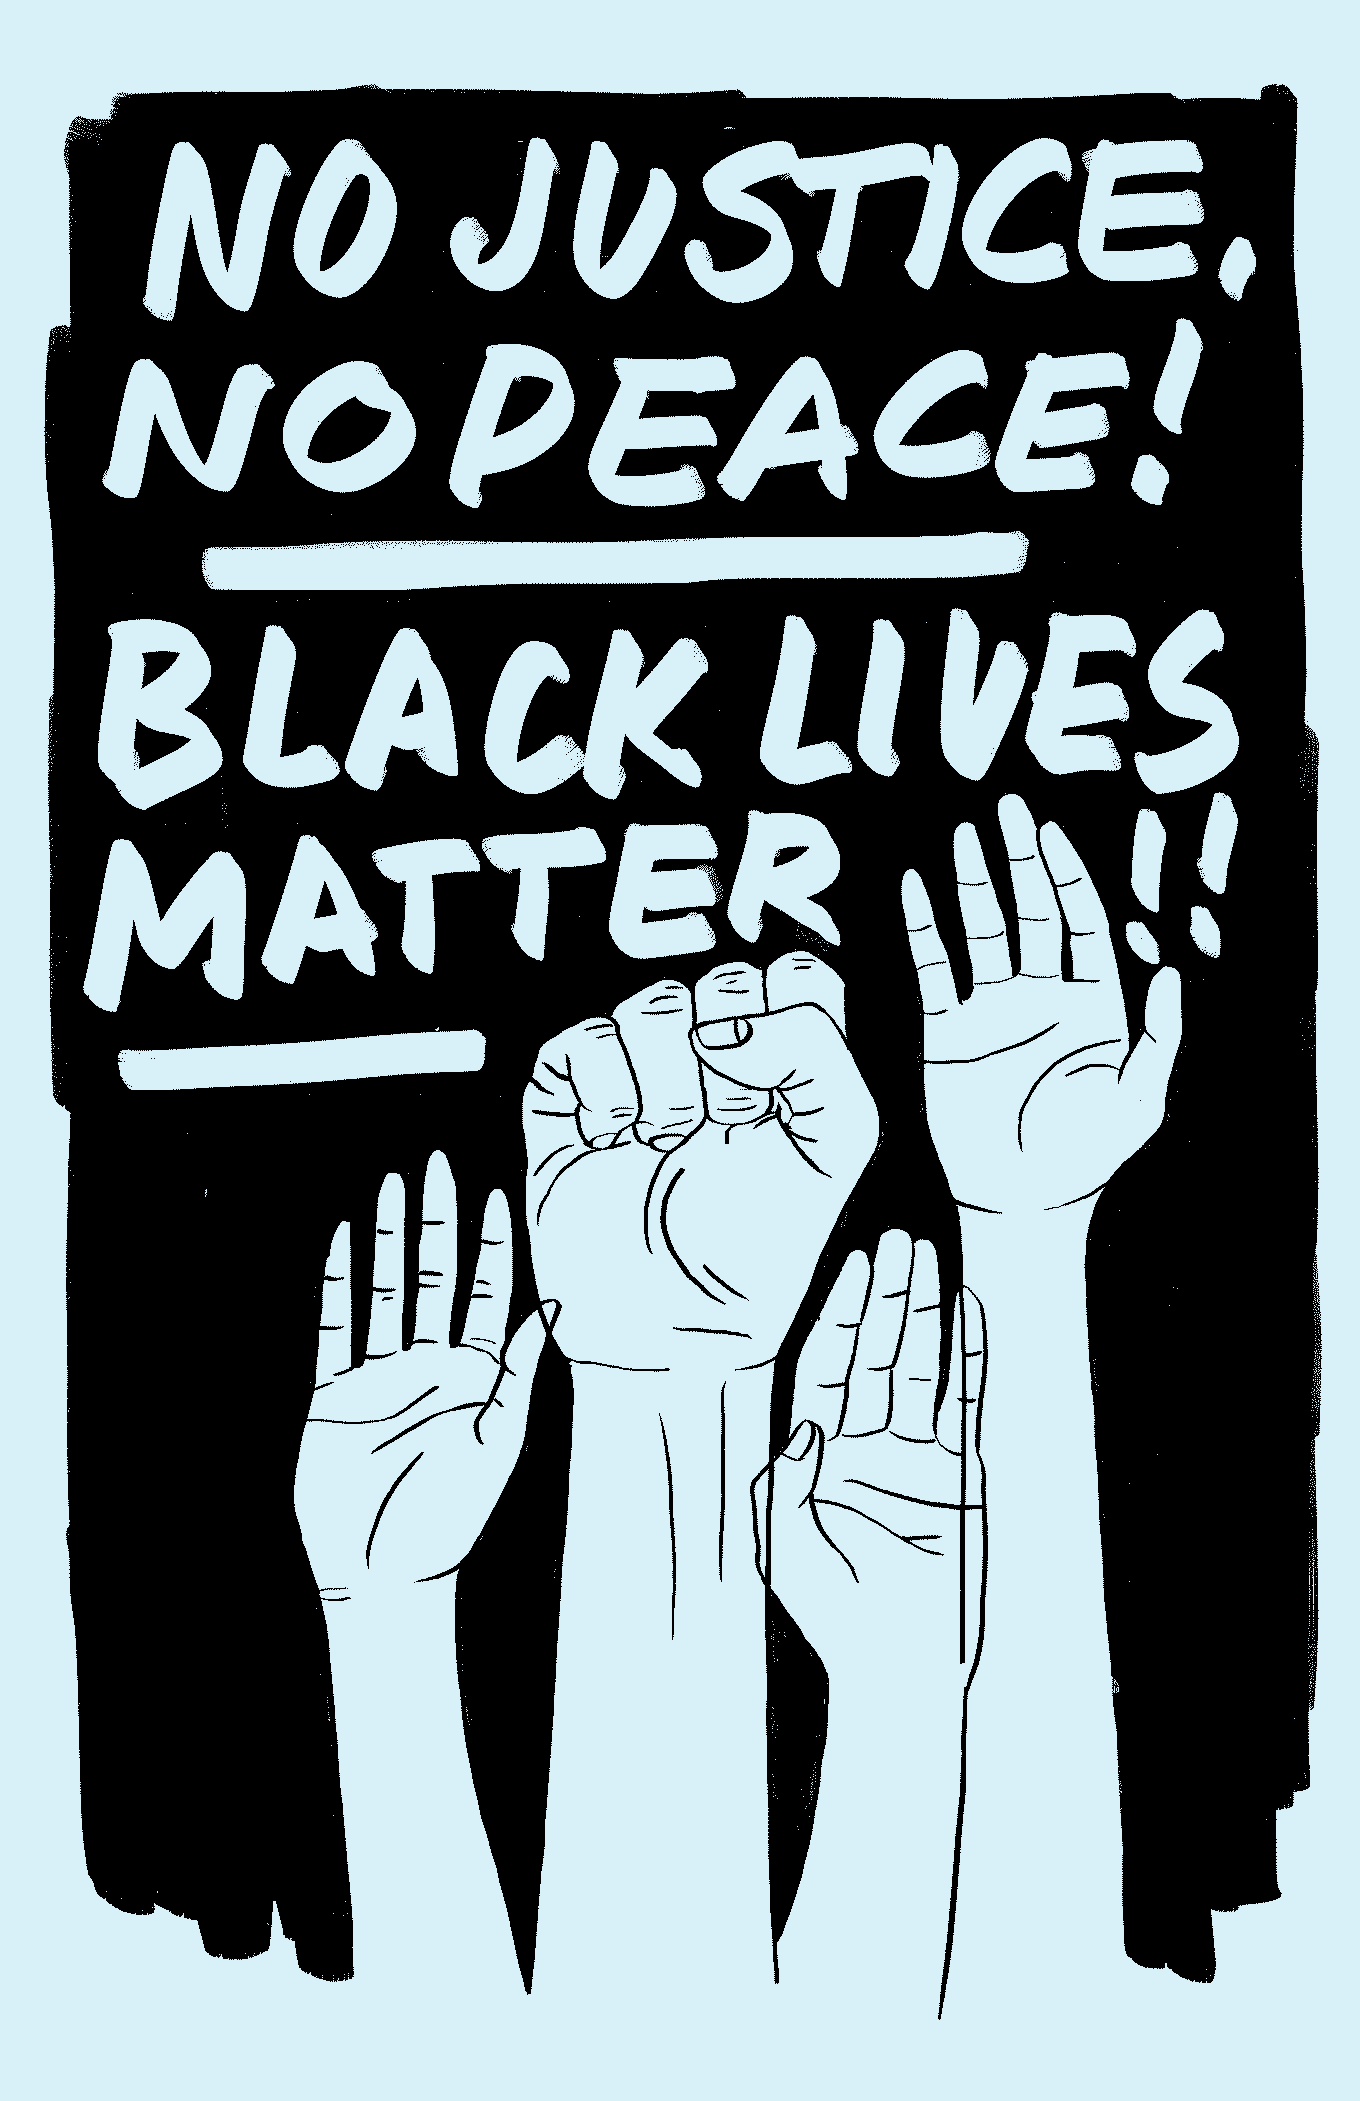 Geen gerechtigheid, geen vrede! Zwarte levens doen er toe